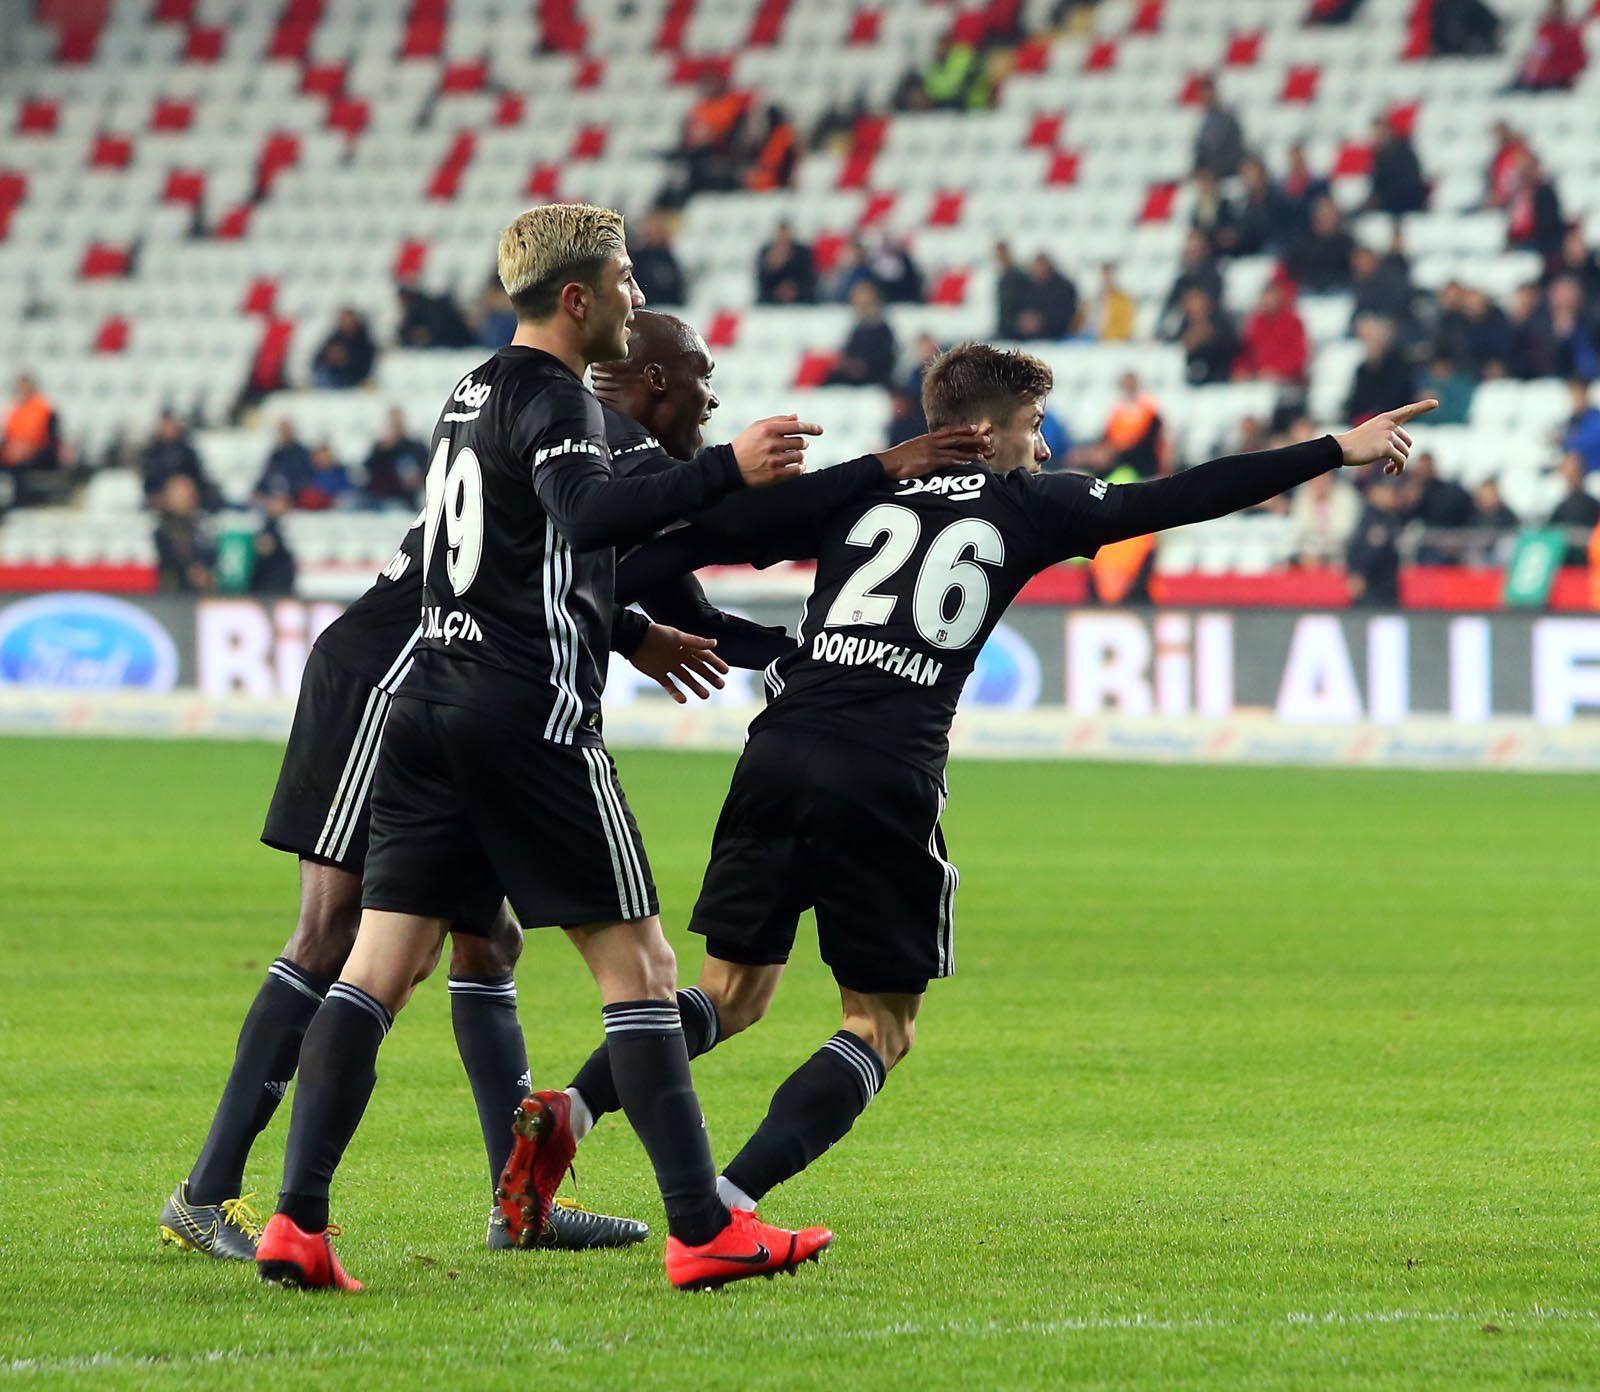 Antalyaspor-Beşiktaş maç sonucu: 2-6